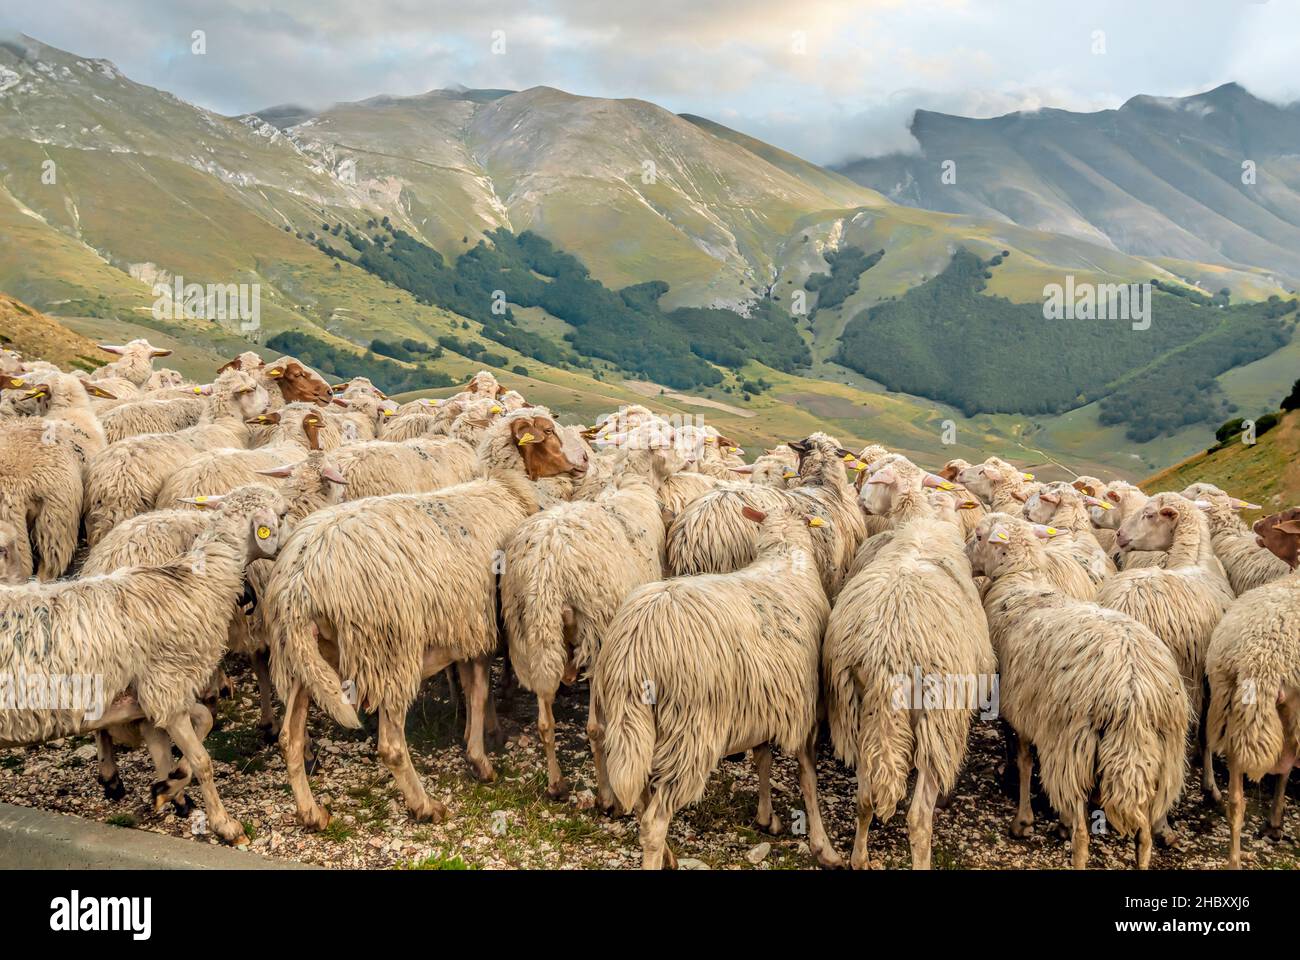 Mandria di pecore al Parco Nazionale dei Monti Sibillini vicino a Visso, Marche, Italia Foto Stock